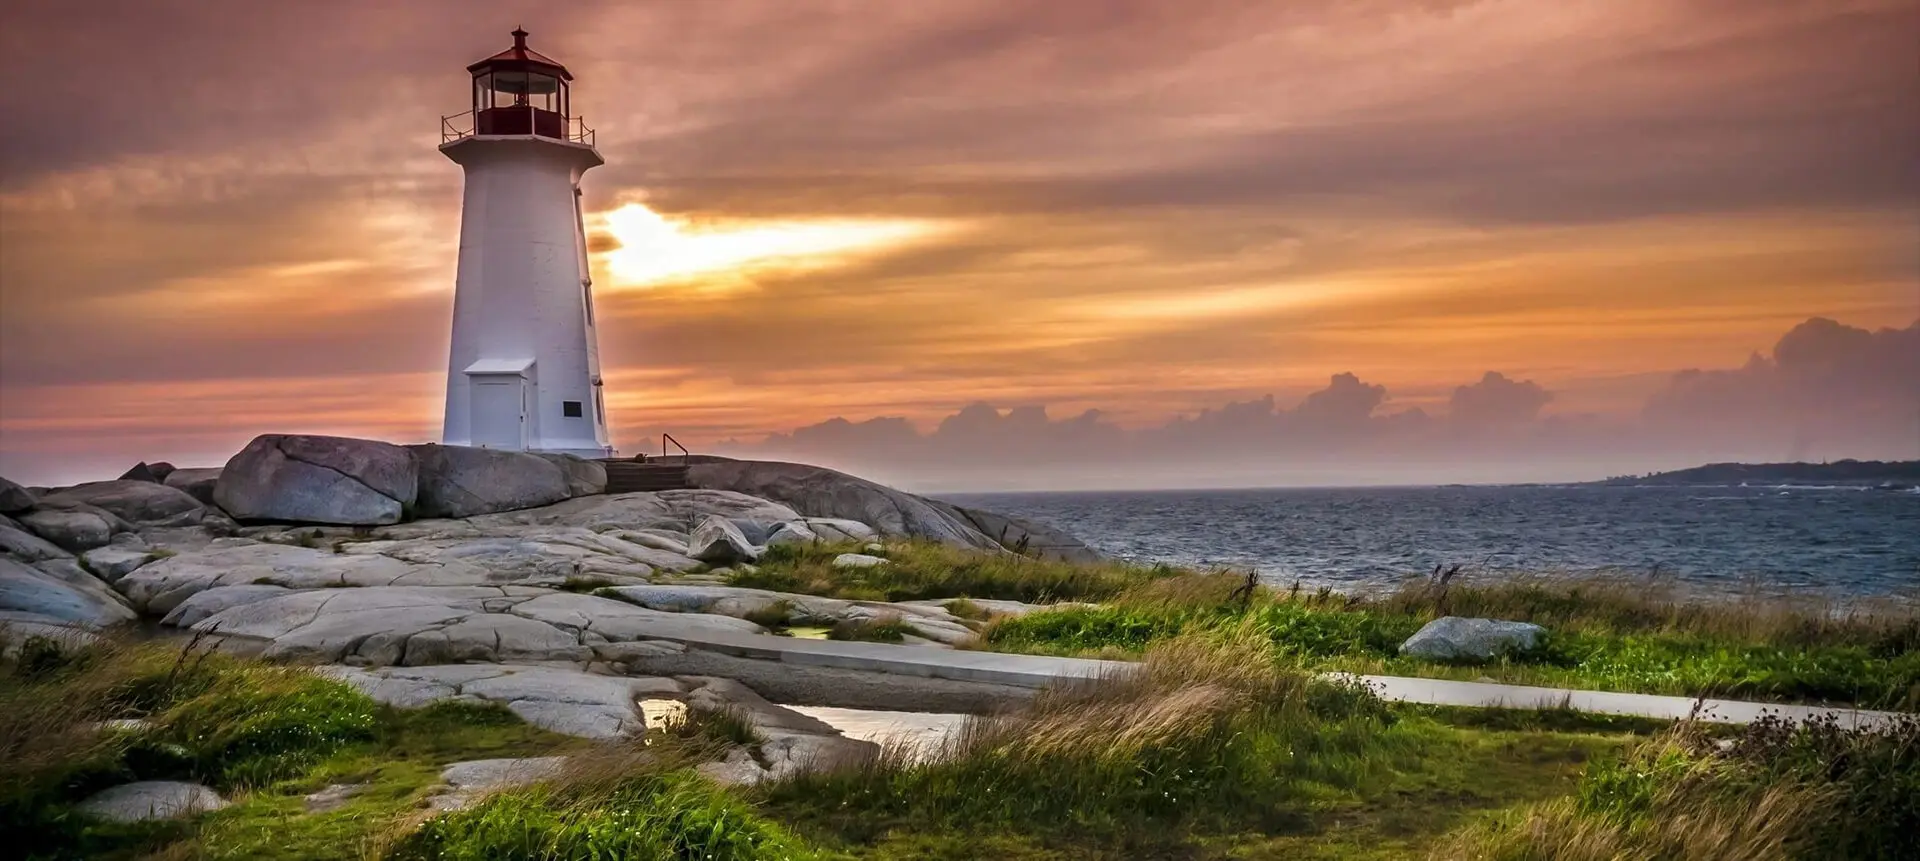 A lighthouse on the edge of an ocean.